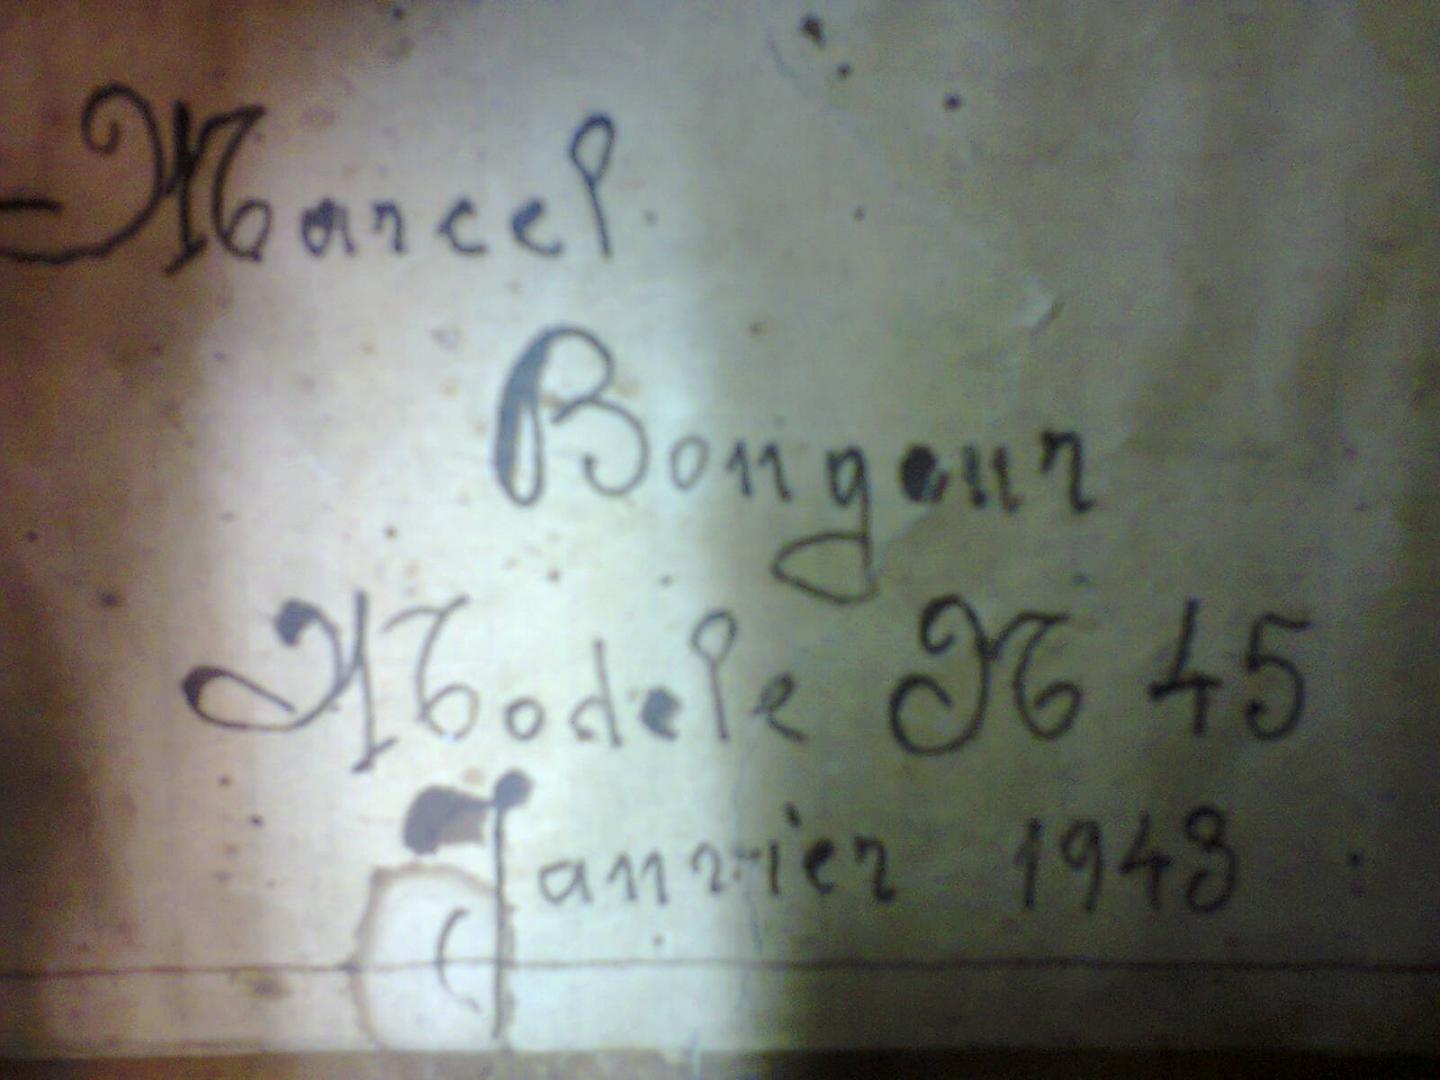 MARCEL ''BONGEUR'' M45 - 1943 GUITARE ACOUSTIQUE JAZZ ARTISANALE FAITE A LA MAIN EN France PAR MARCEL ''BONGEUR'' EN JANVIER 1943 ENTIEREMENT BOIS MASSIF.